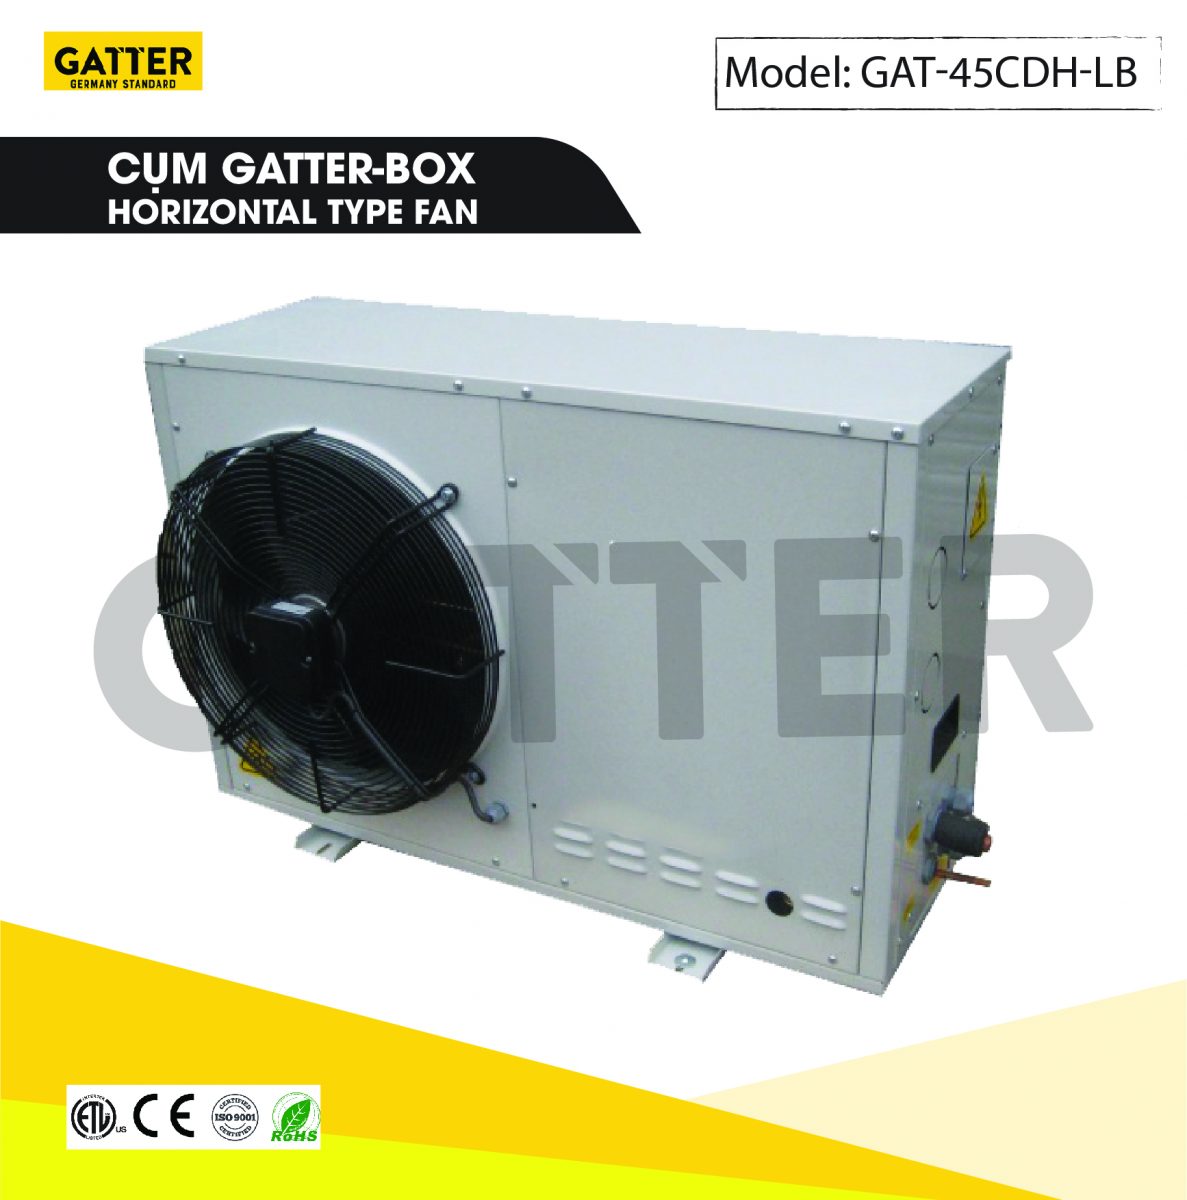 Cụm Gatter-box GAT-45CDH-LB